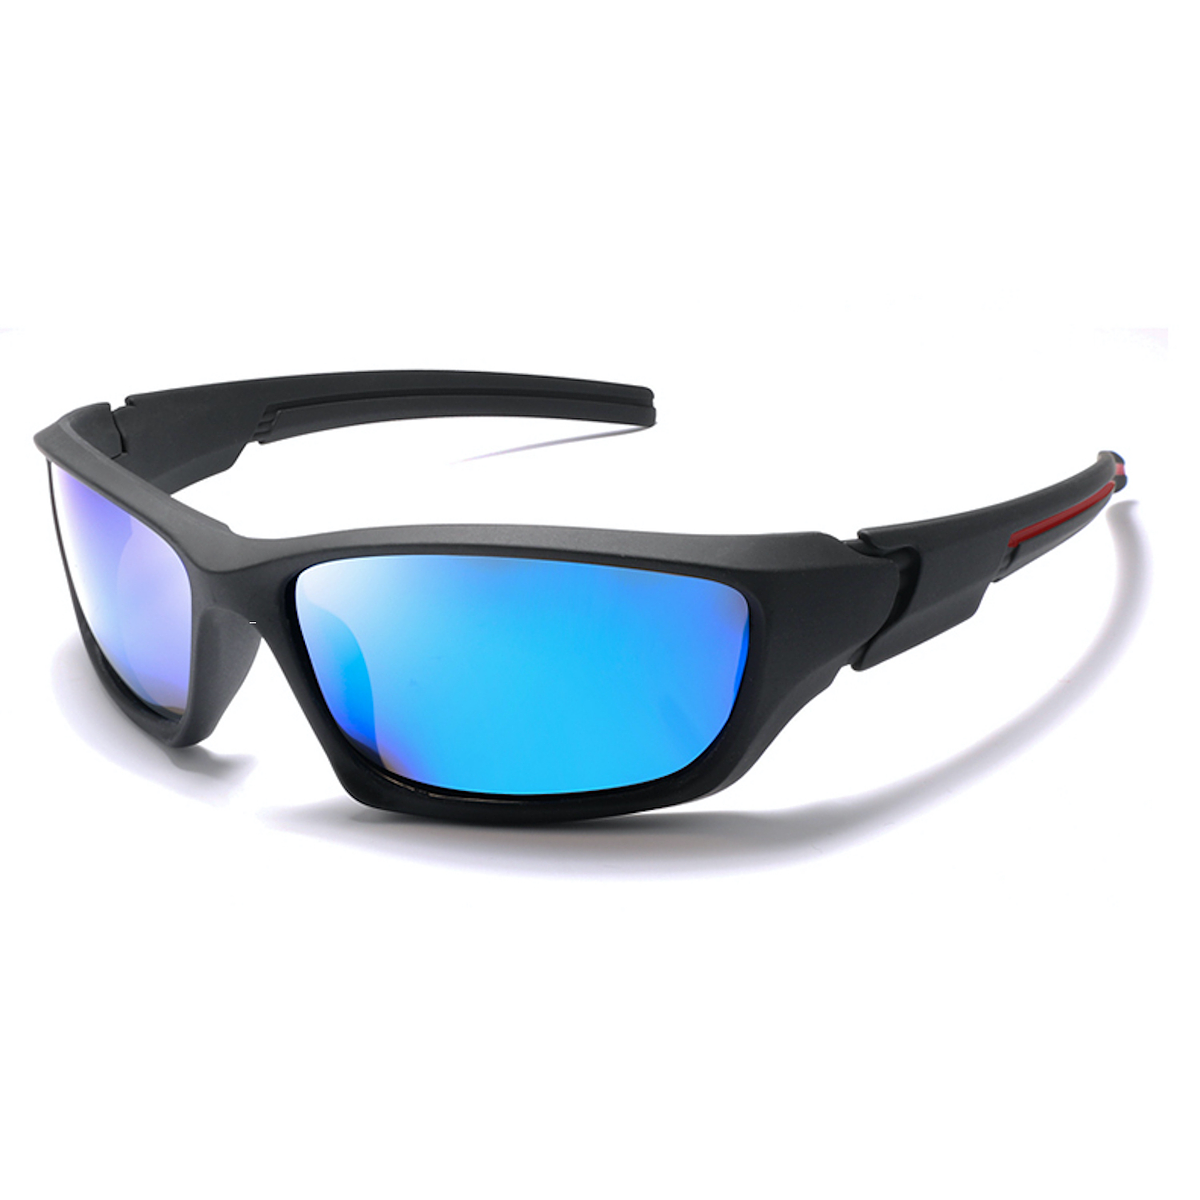 WHCREAT Hombres Gafas de Sol Polarizadas Fotocromáticas Lente de Protección UV400 con Bisagras de Resorte 